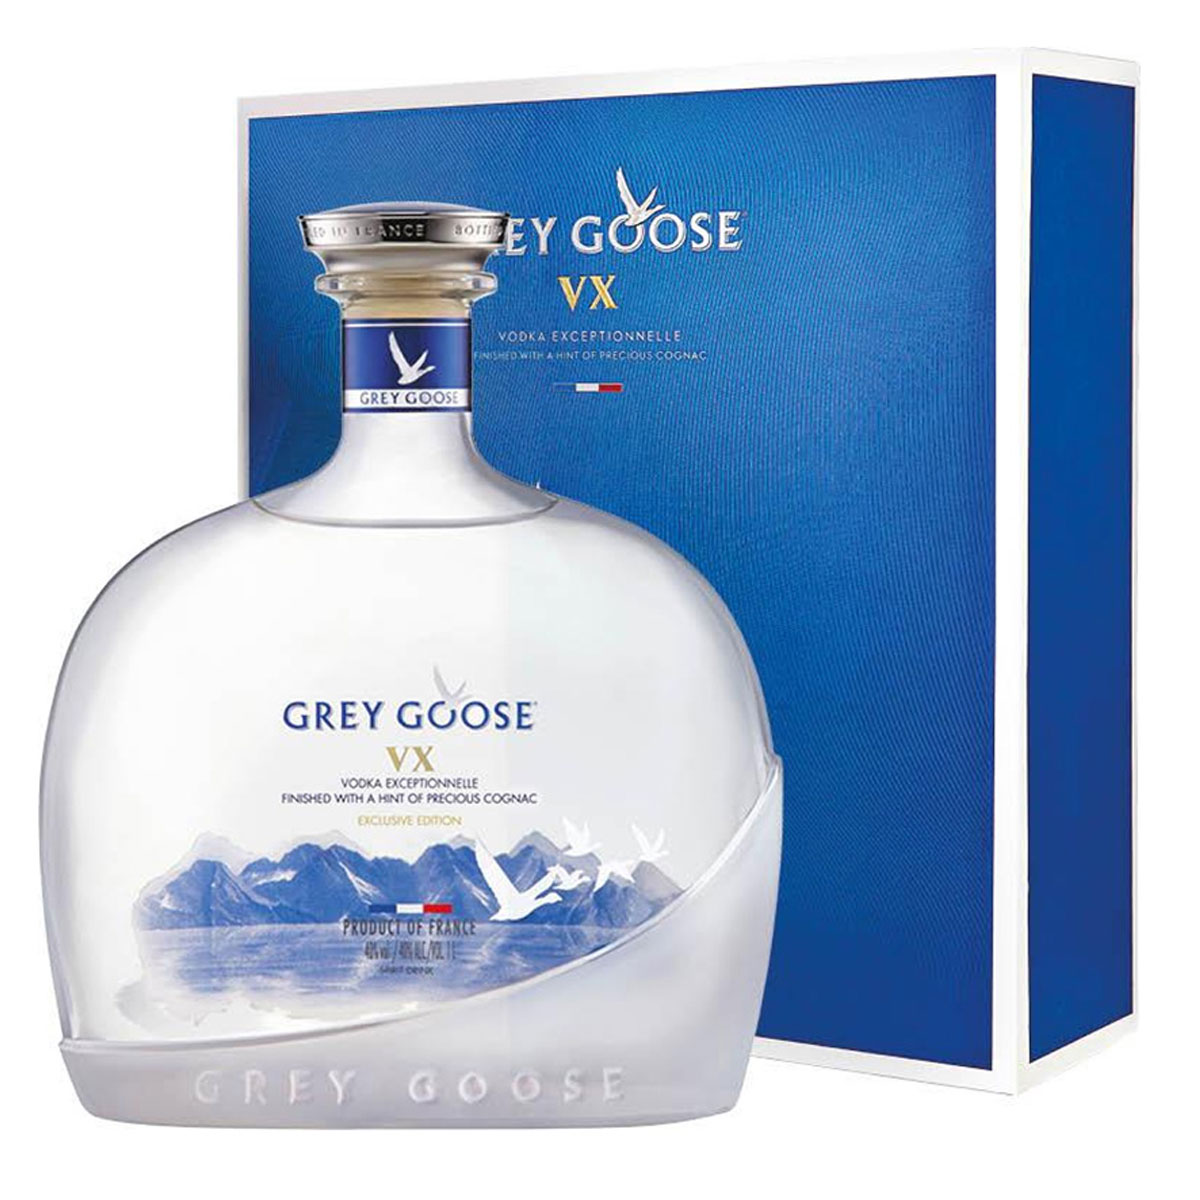 a bottle of grey groose vx 1l vodka